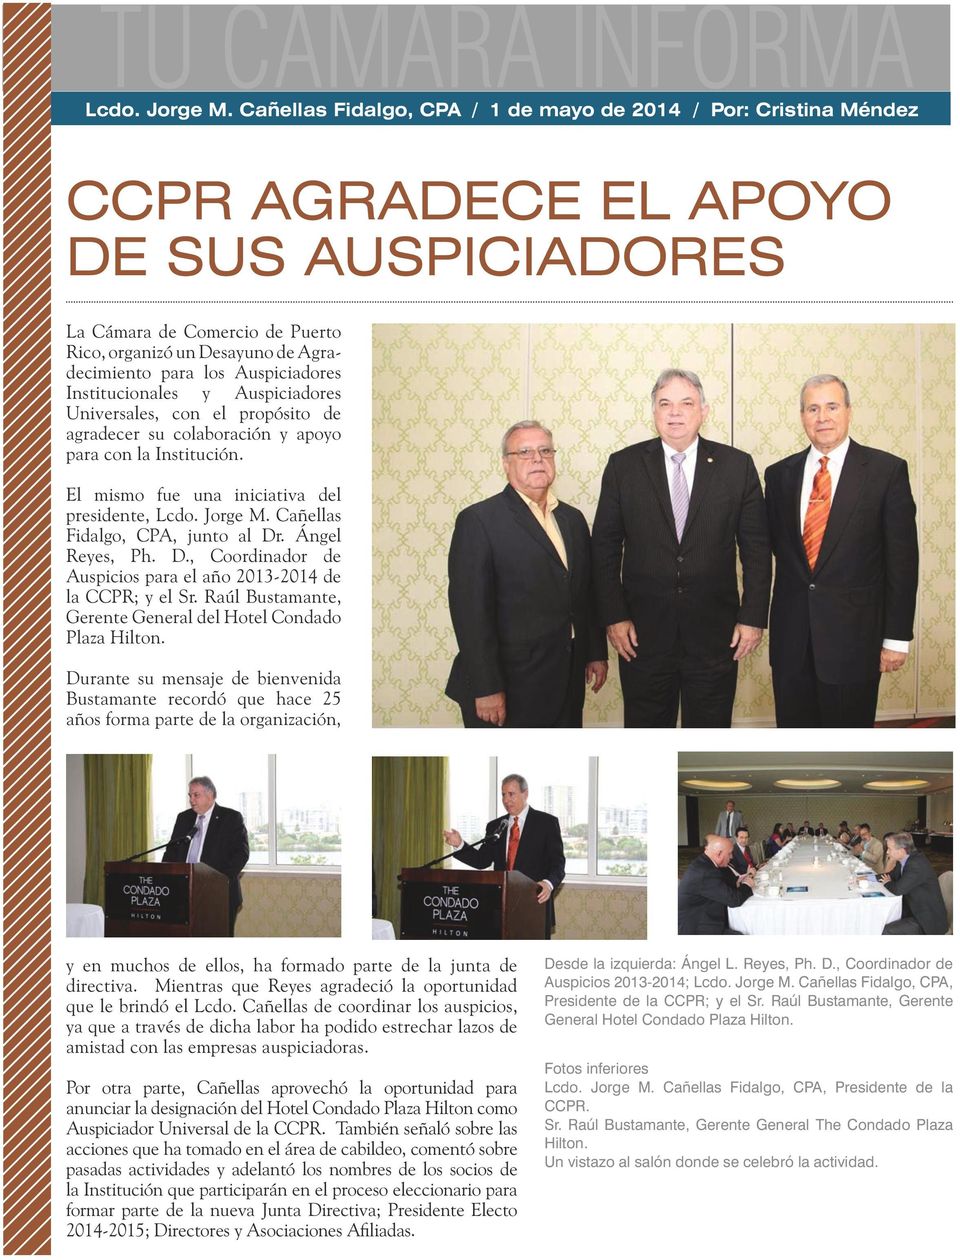 . Ángel Reyes, Ph. D., Coordinador de Auspicios para el año 2013-2014 de la CCPR; y el Sr. Raúl Bustamante, Gerente General del Hotel Condado Plaza Hilton.